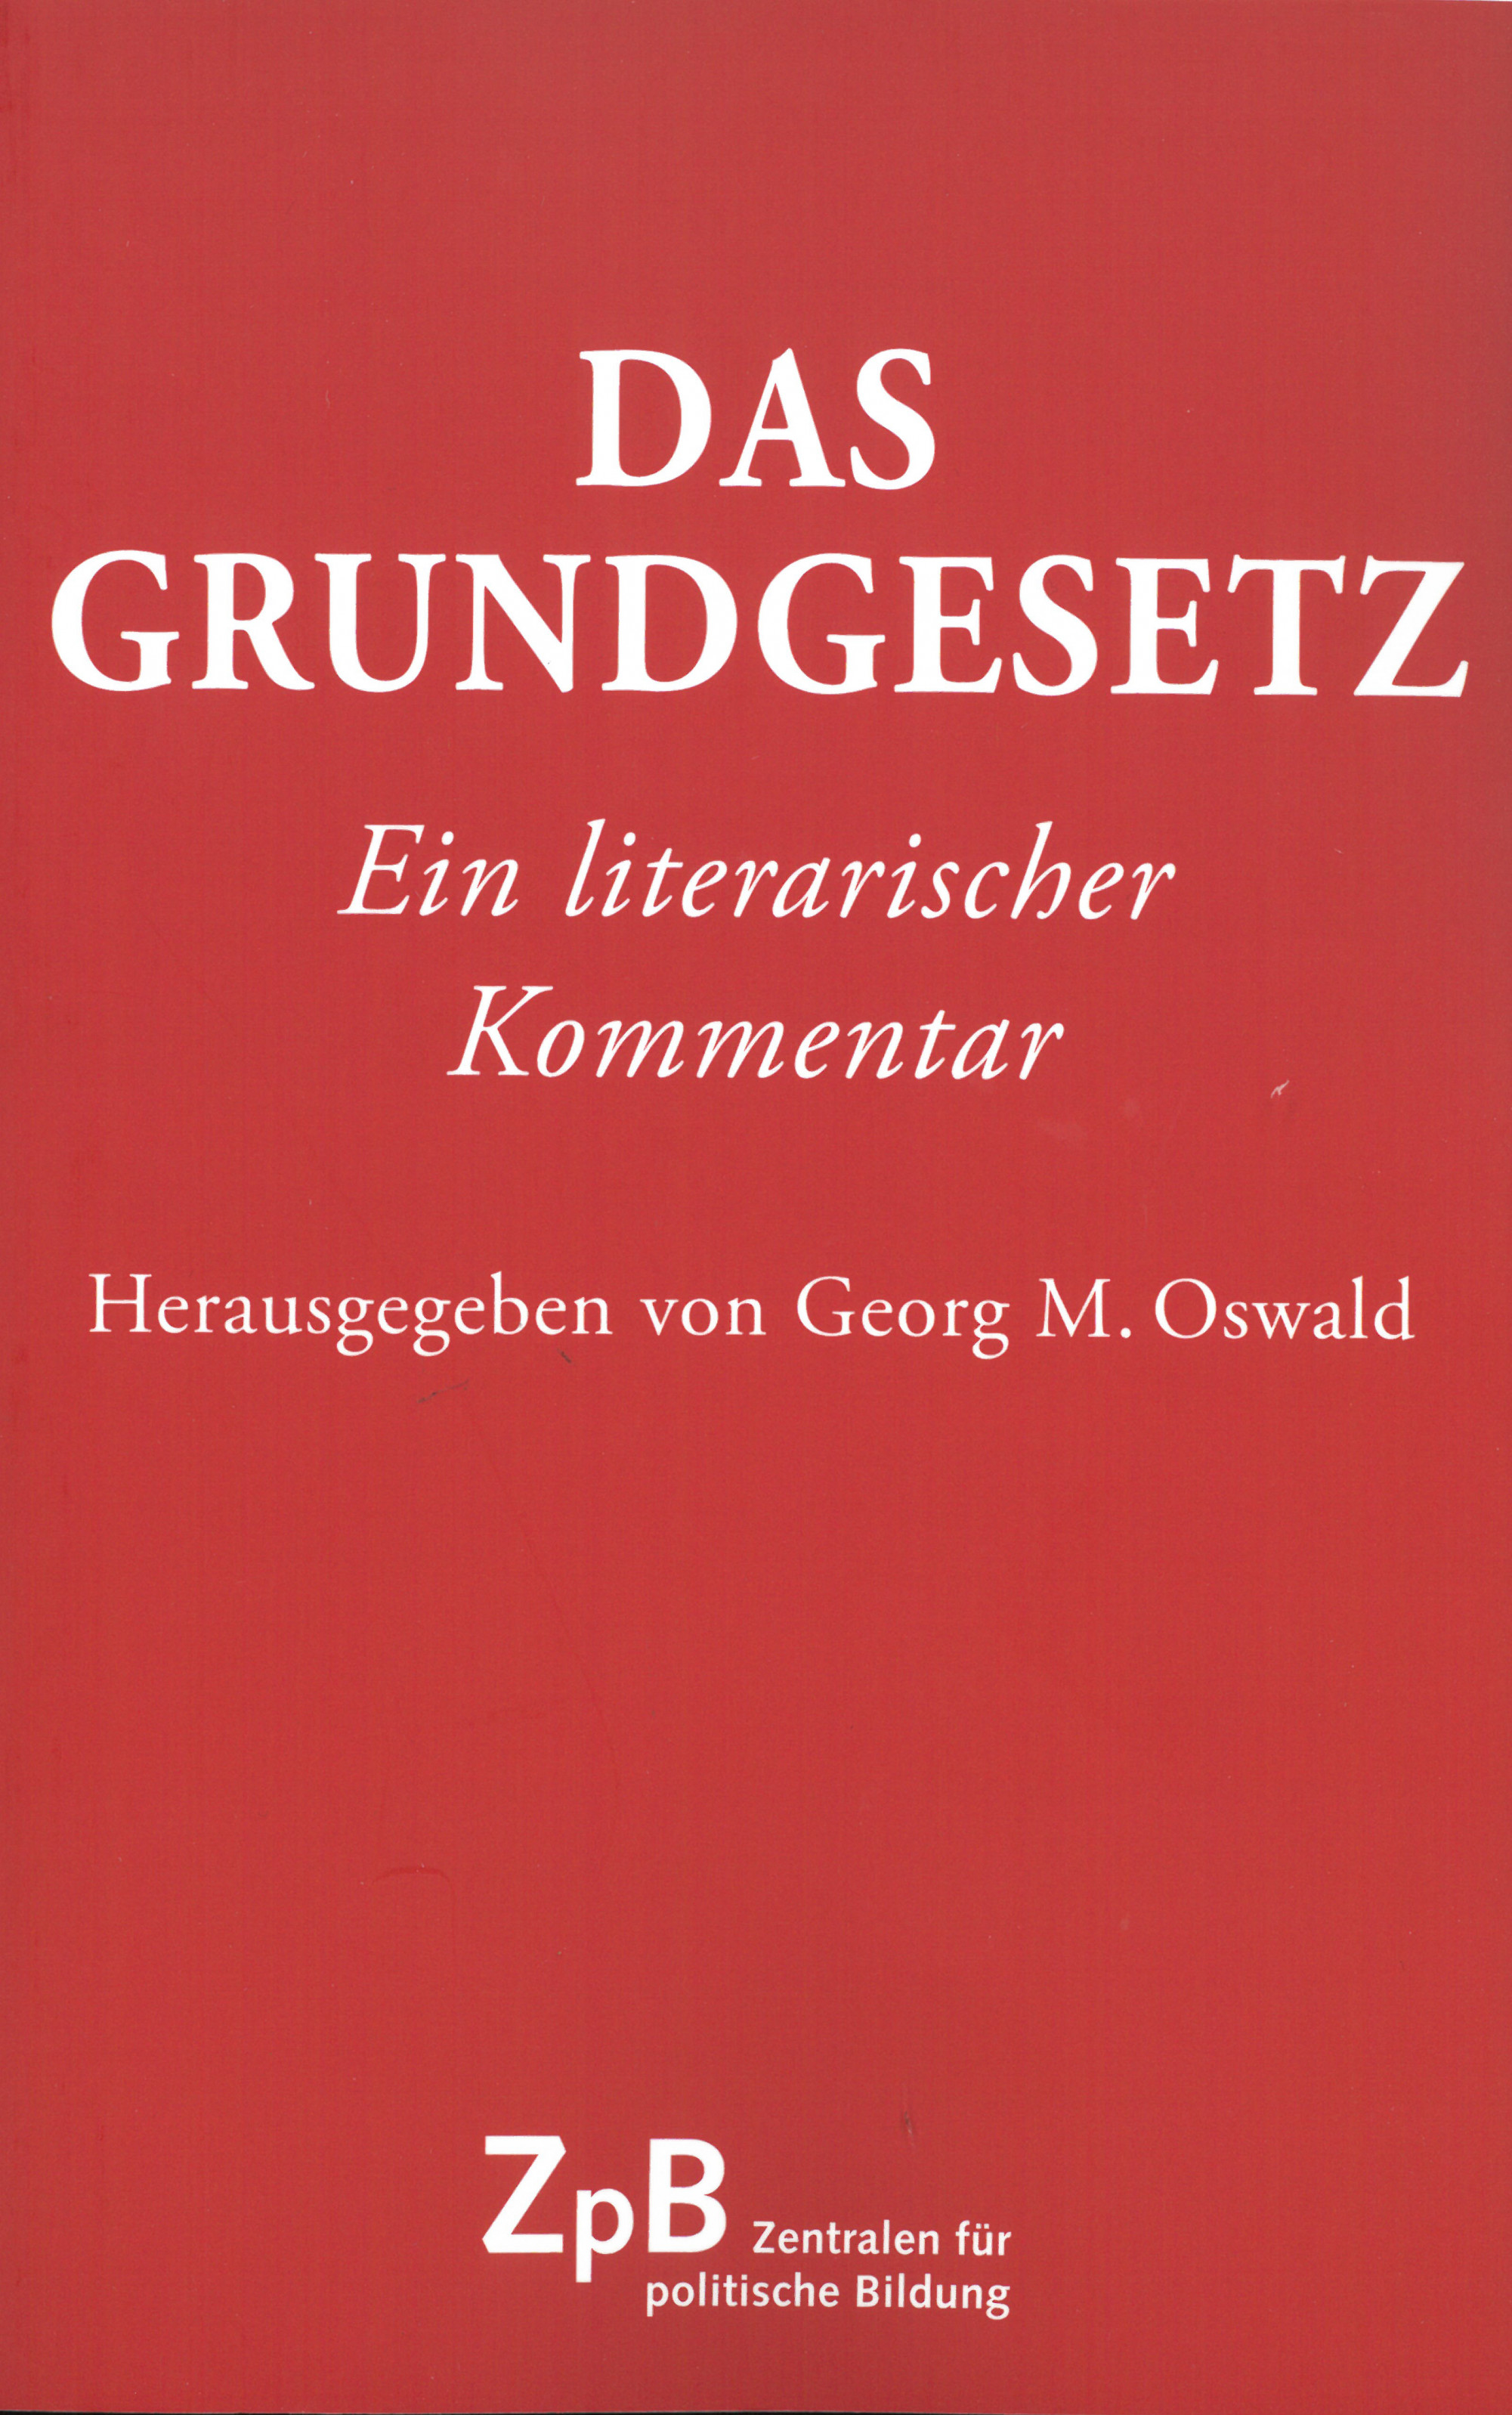 Buchcover "Das Grundgesetz. Ein literarischer Kommentar"